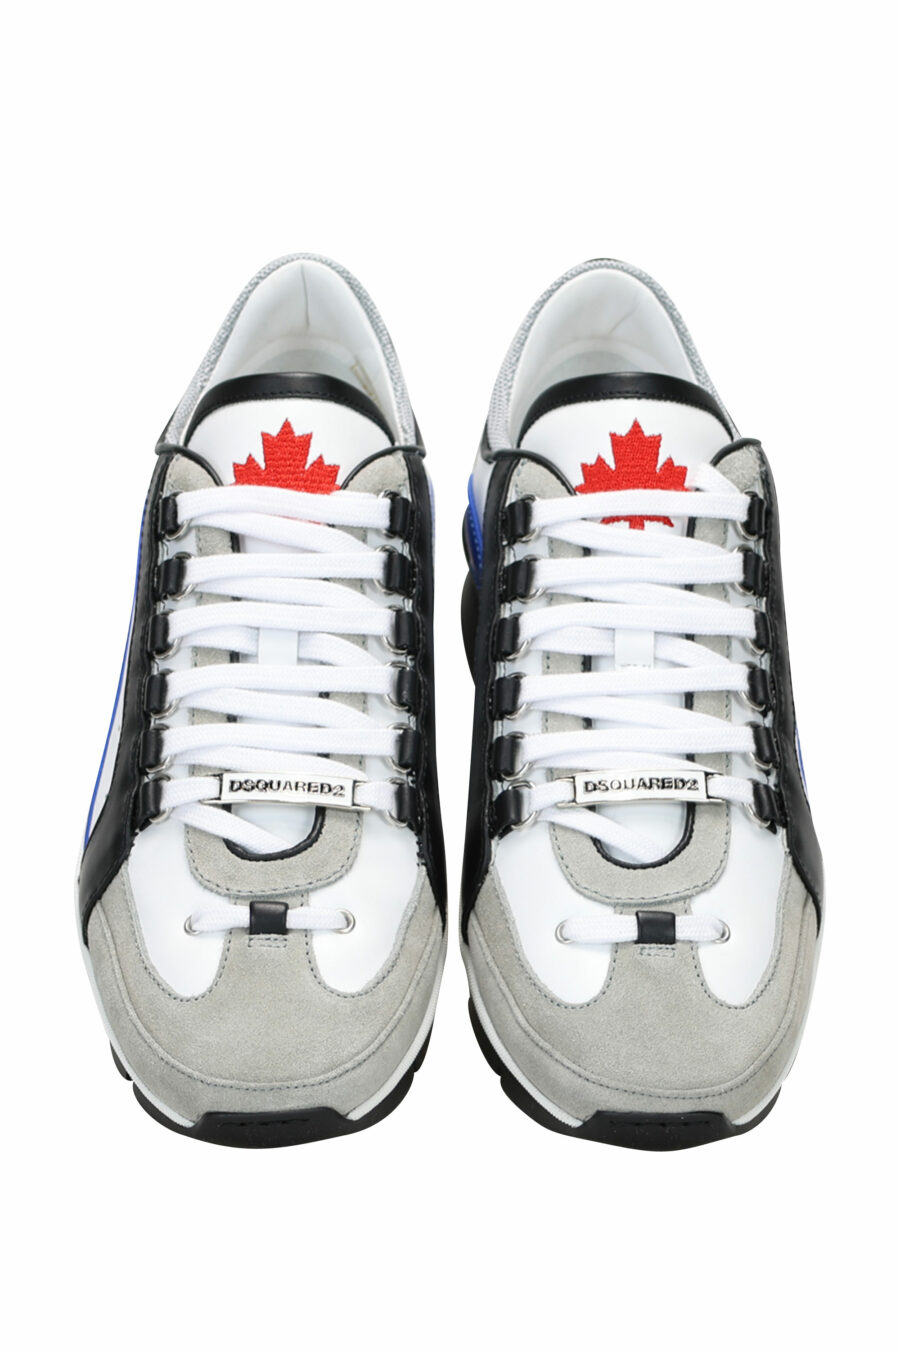 Zapatillas blancas con negro y azul y minilogo - 8055777243701 4